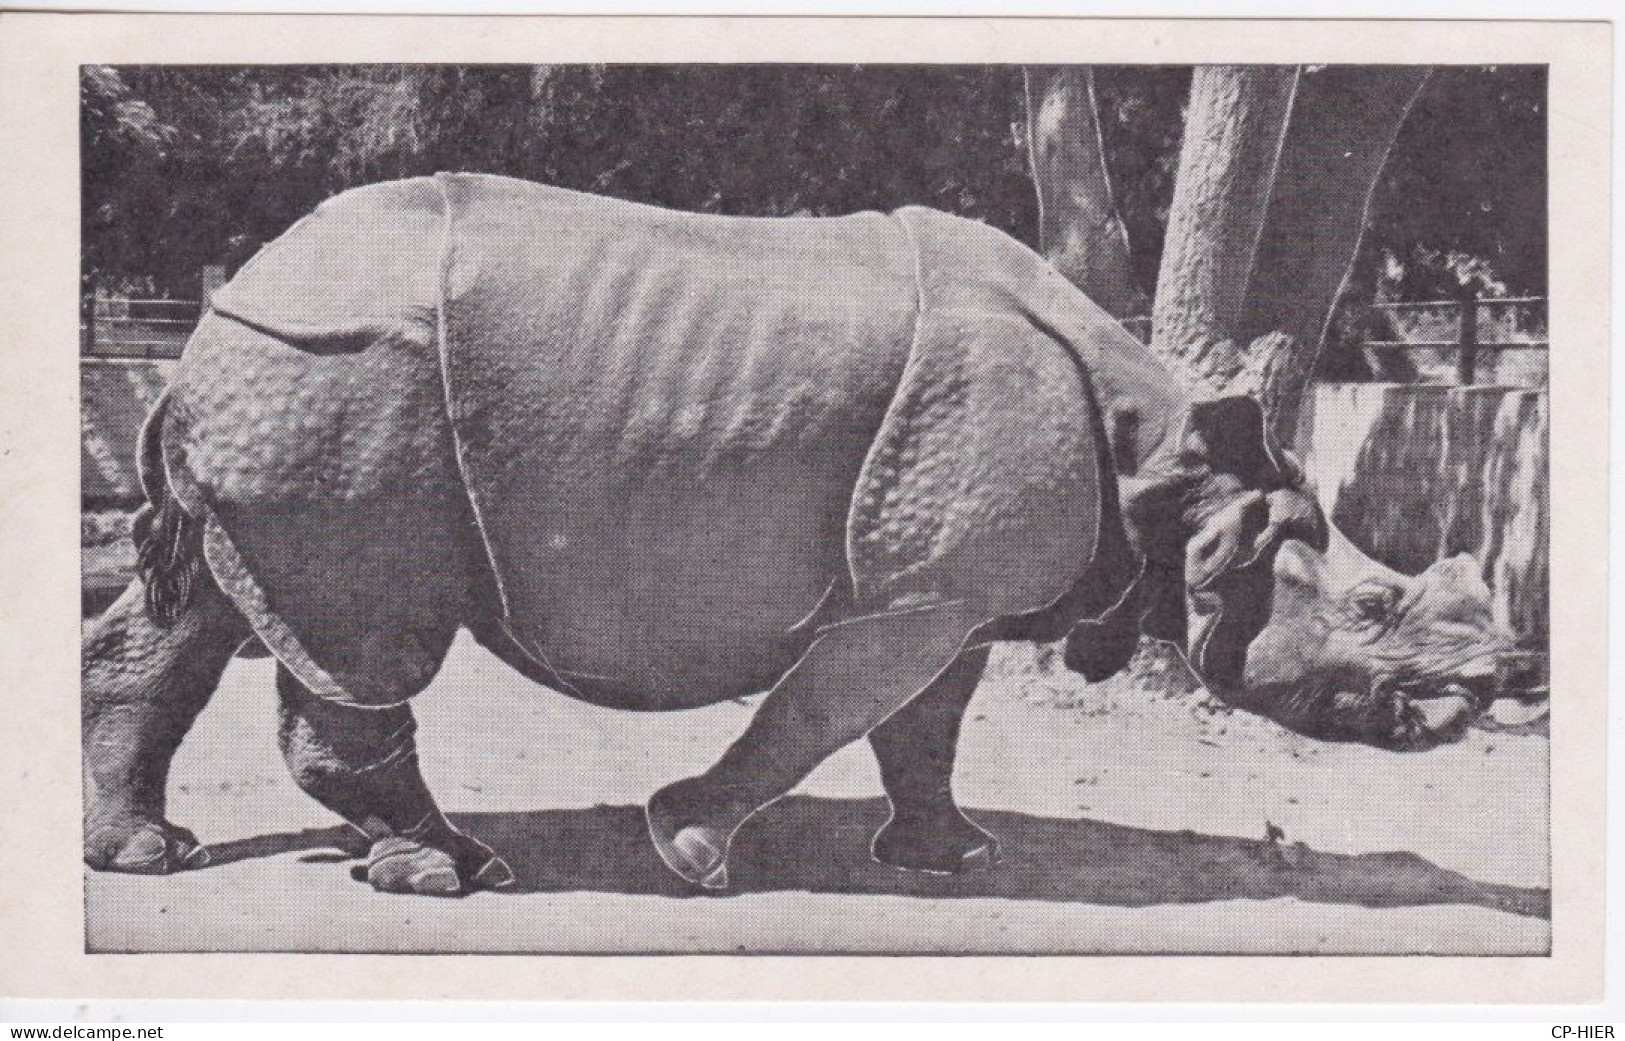 RHINOCEROS -  INDIAN RHINOCEROS - Rhinoceros